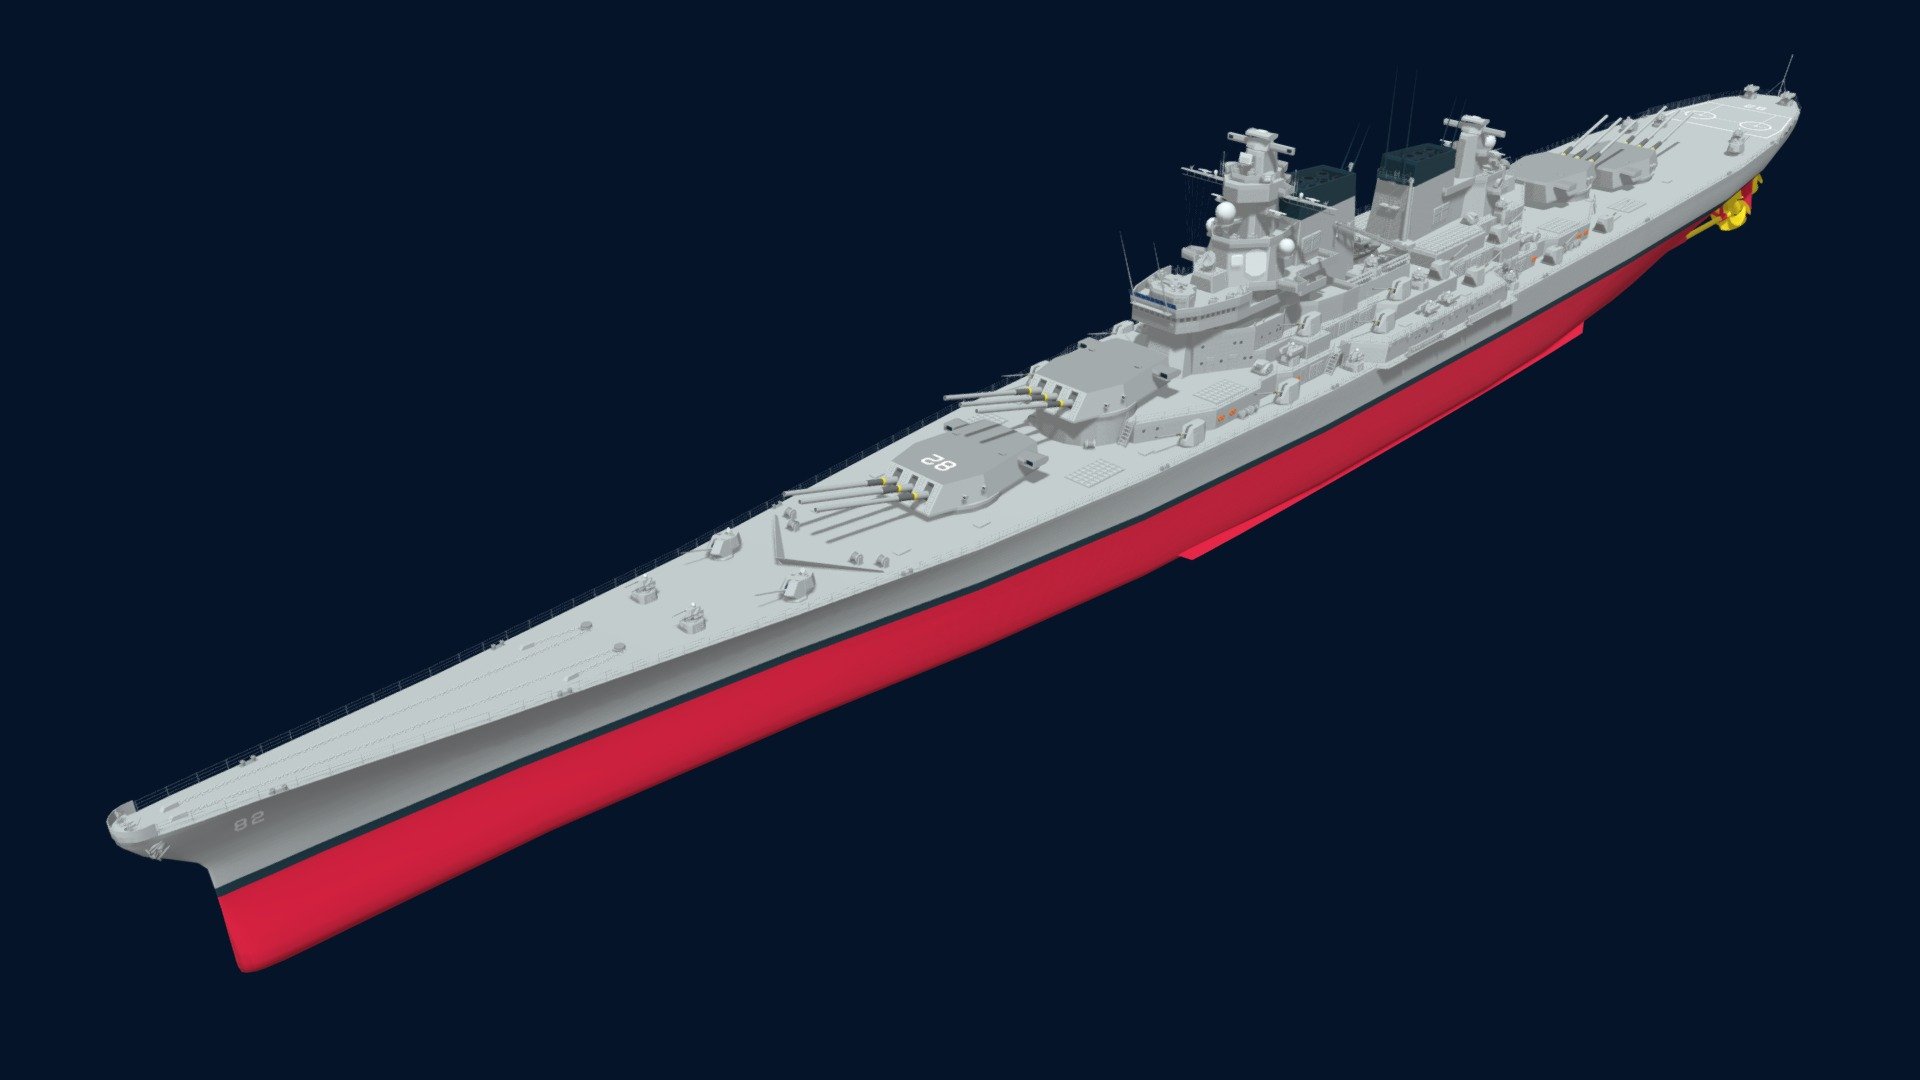 Sd Model Makers Battleship Models Montana Class Battleship Models | My ...